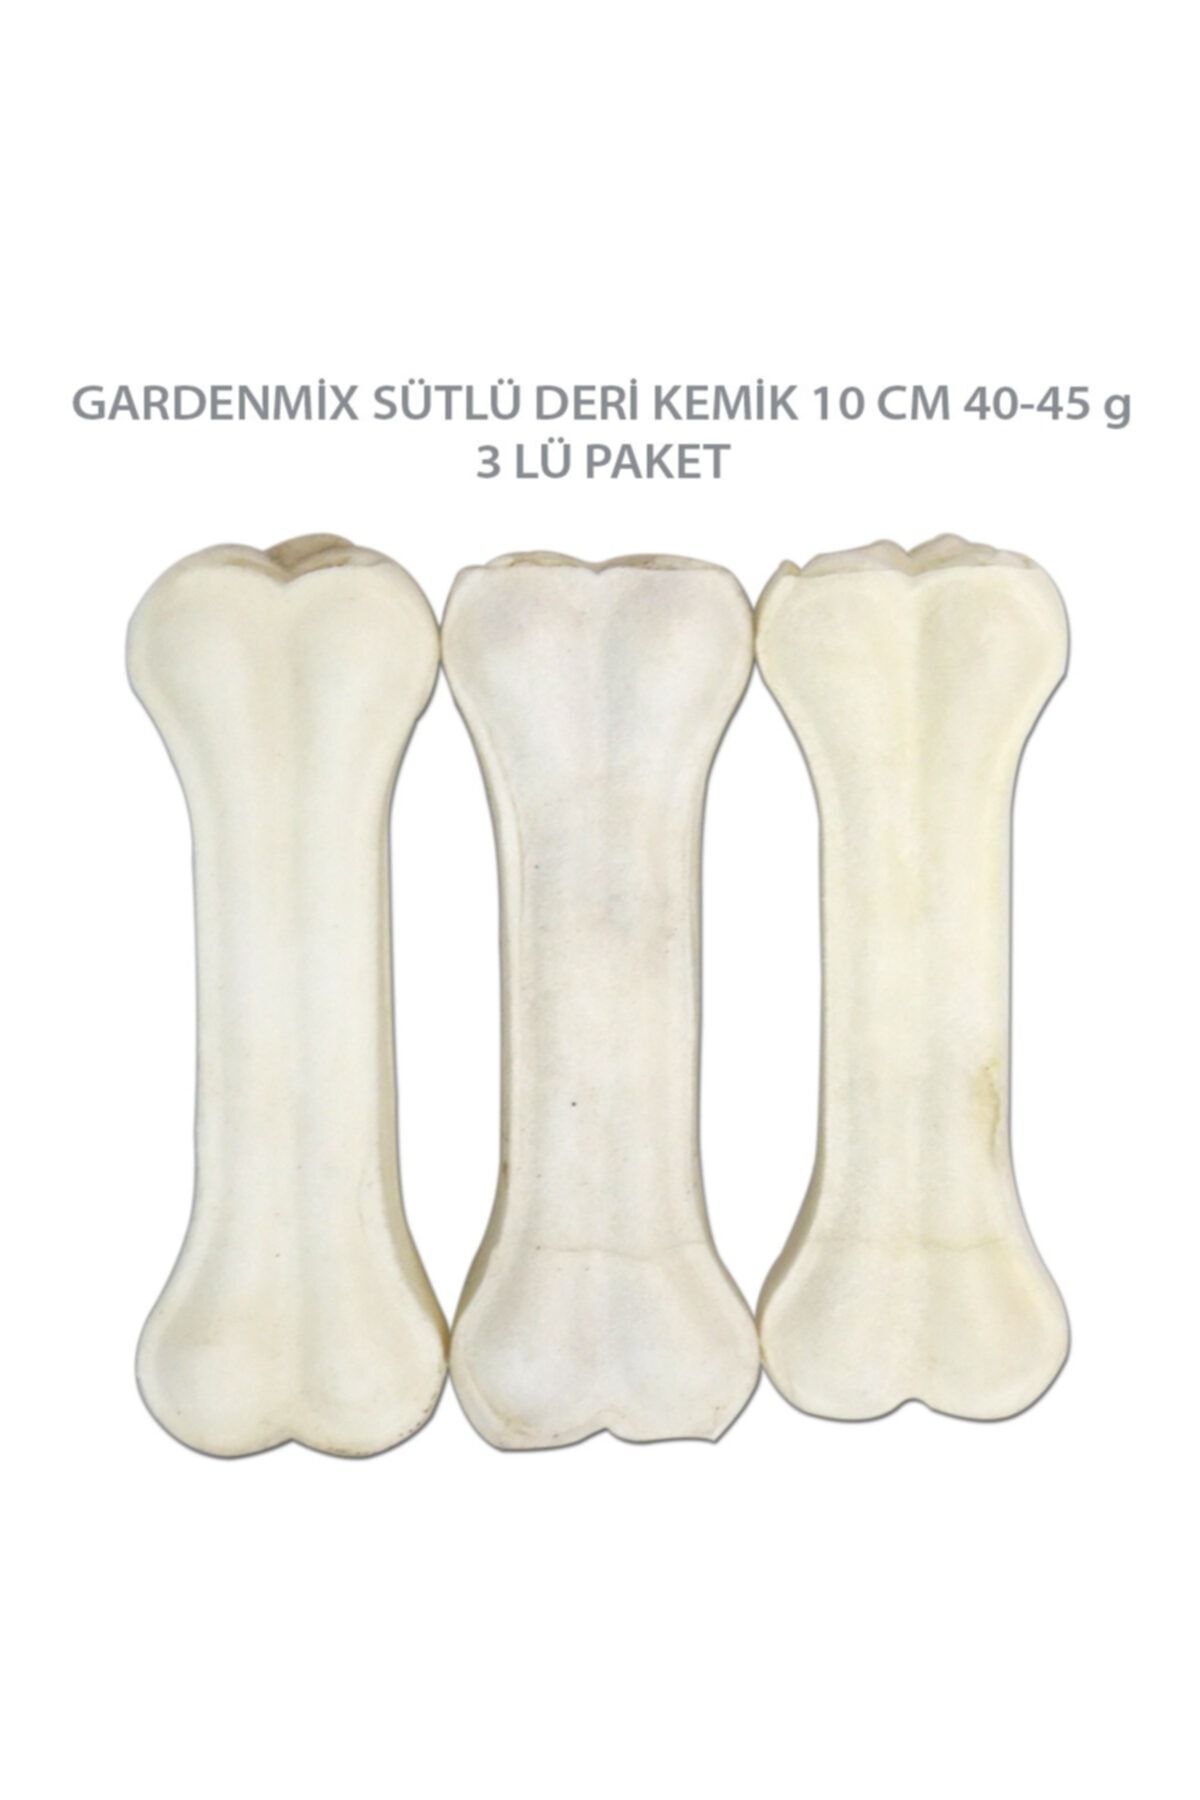 Gardenmix Sütlü Pres Deri Kemik 10 Cm 40-45 Gr ( 3 Lü Paket )